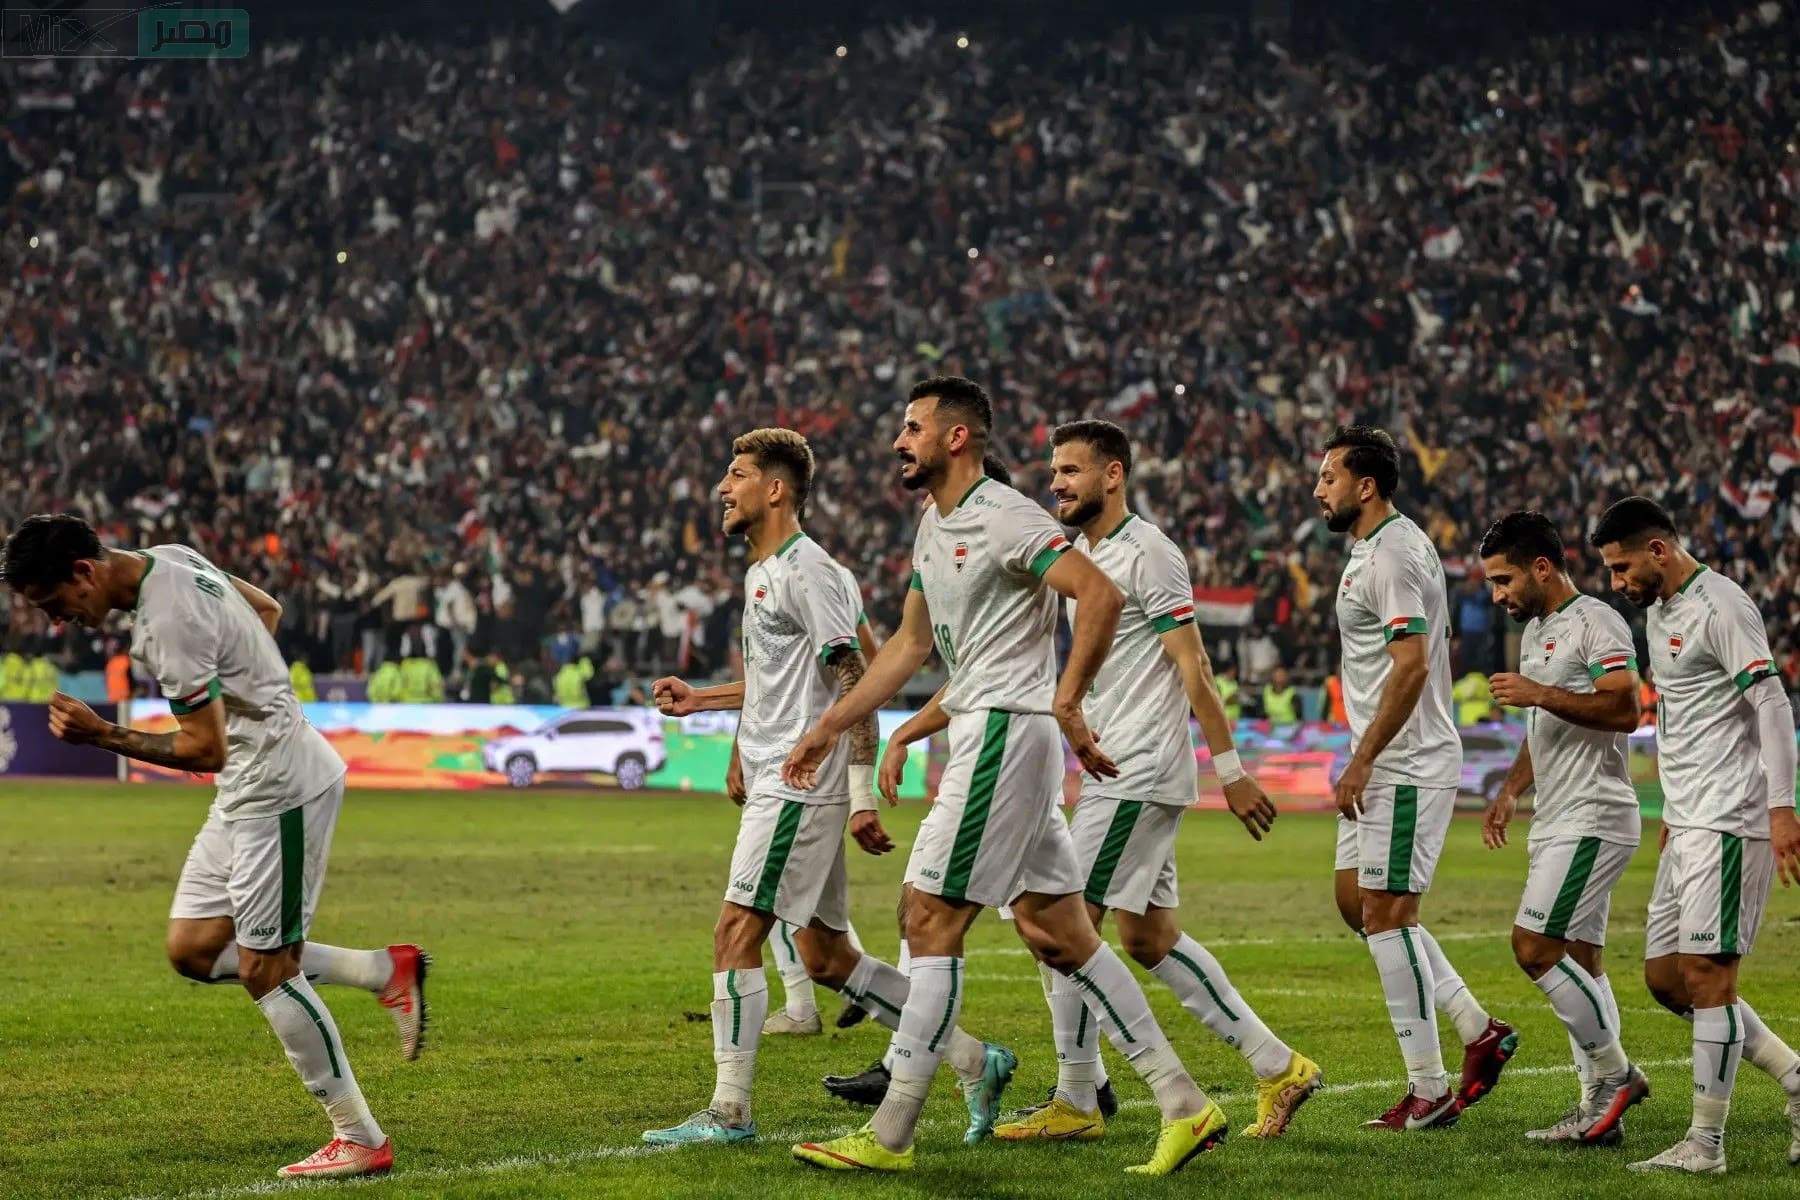 موعد مباراة العراق وإندونيسيا في تصفيات آسيا المؤهلة لكأس العالم 2026 والقنوات الناقلة